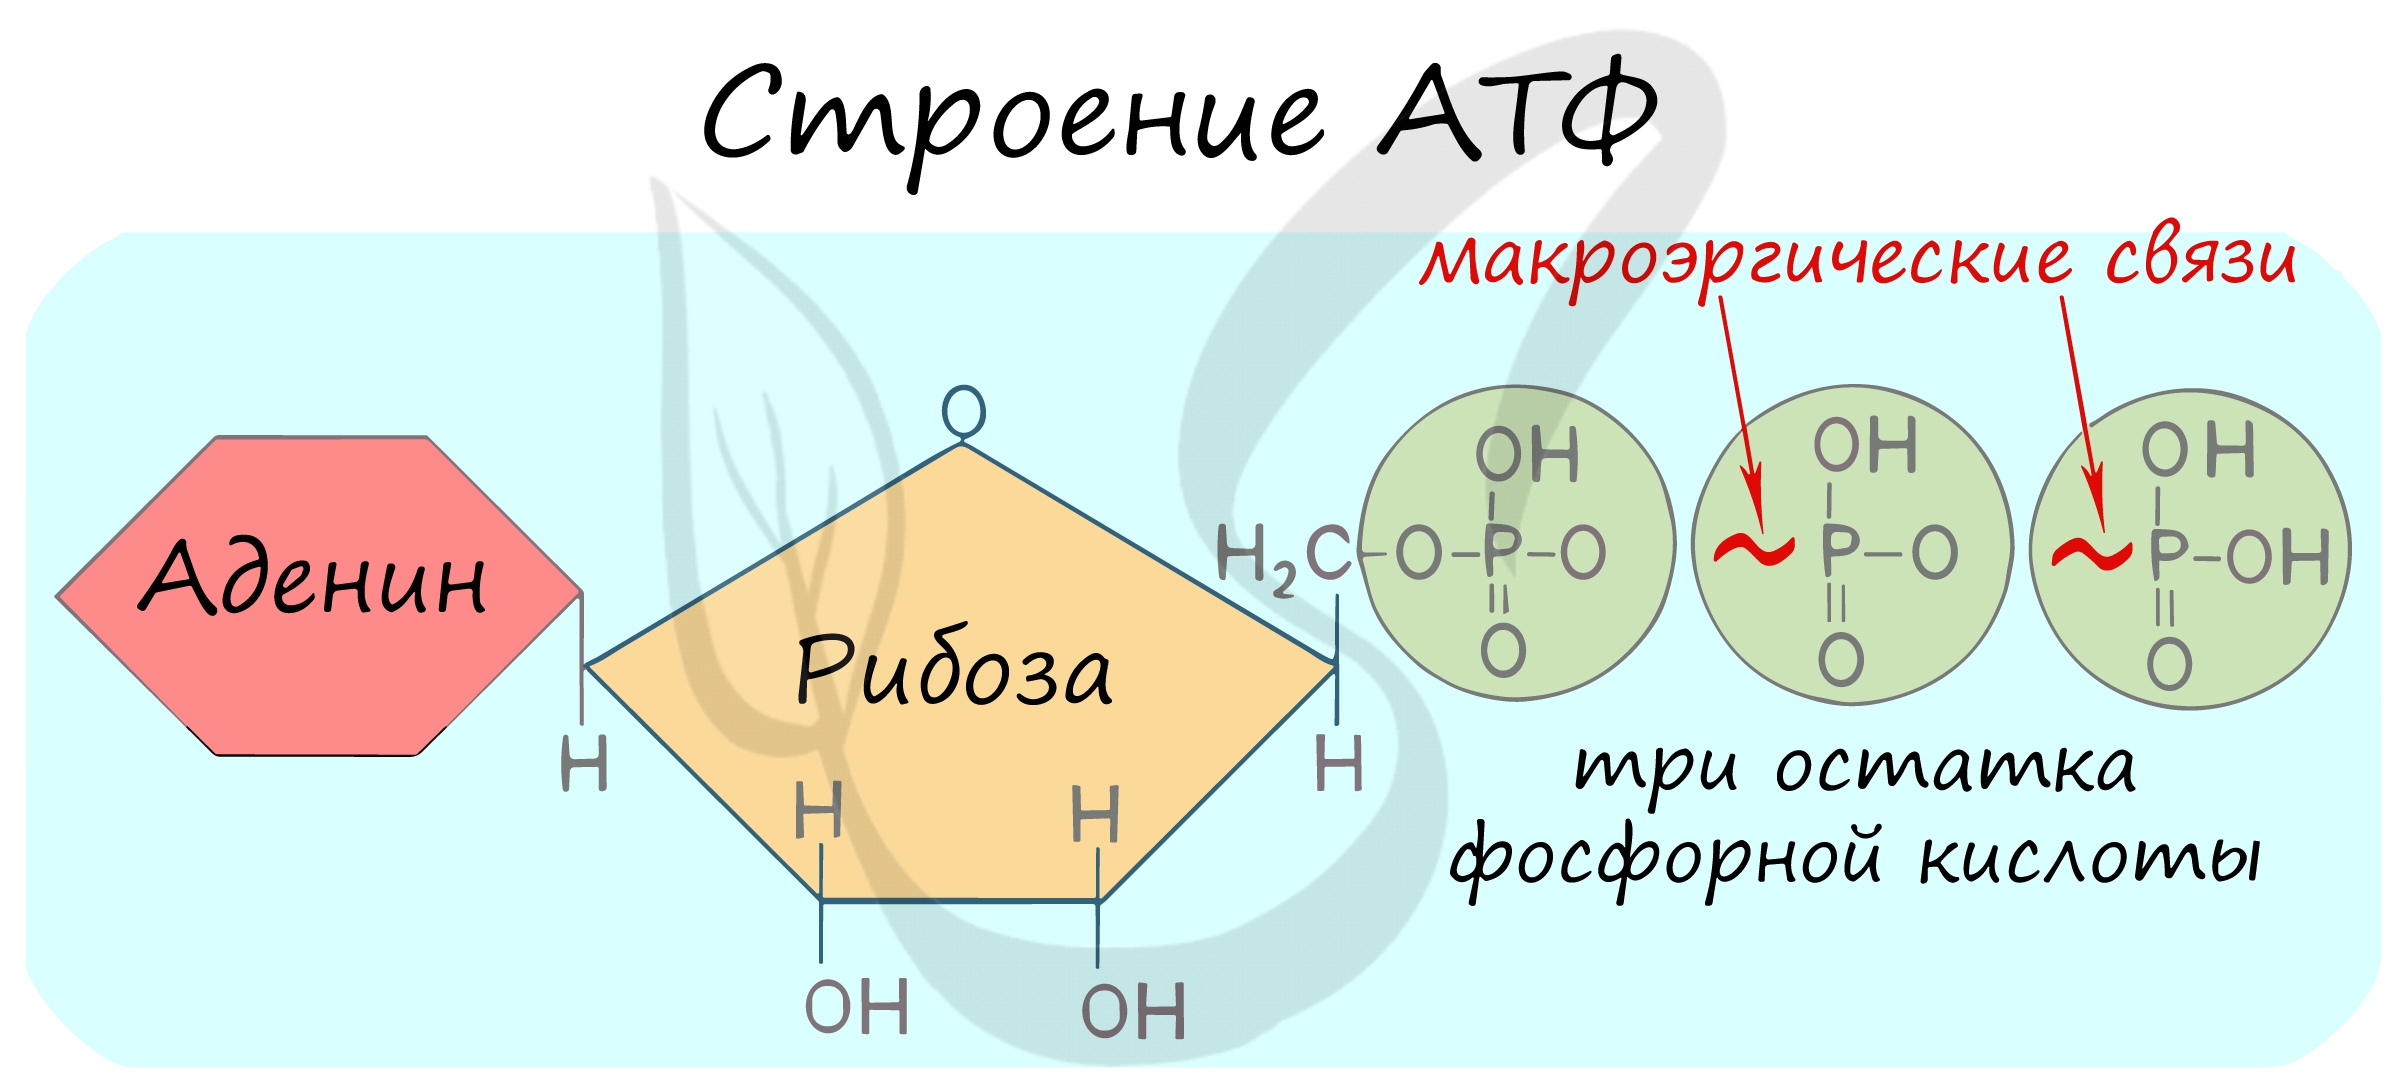 Остаток кислоты атф. Макроэргические связи в молекуле АТФ. Формула АТФ С макроэргическими связями. Макроэргическое соединение АТФ. Гидролиз макроэргических связей молекулы АТФ.